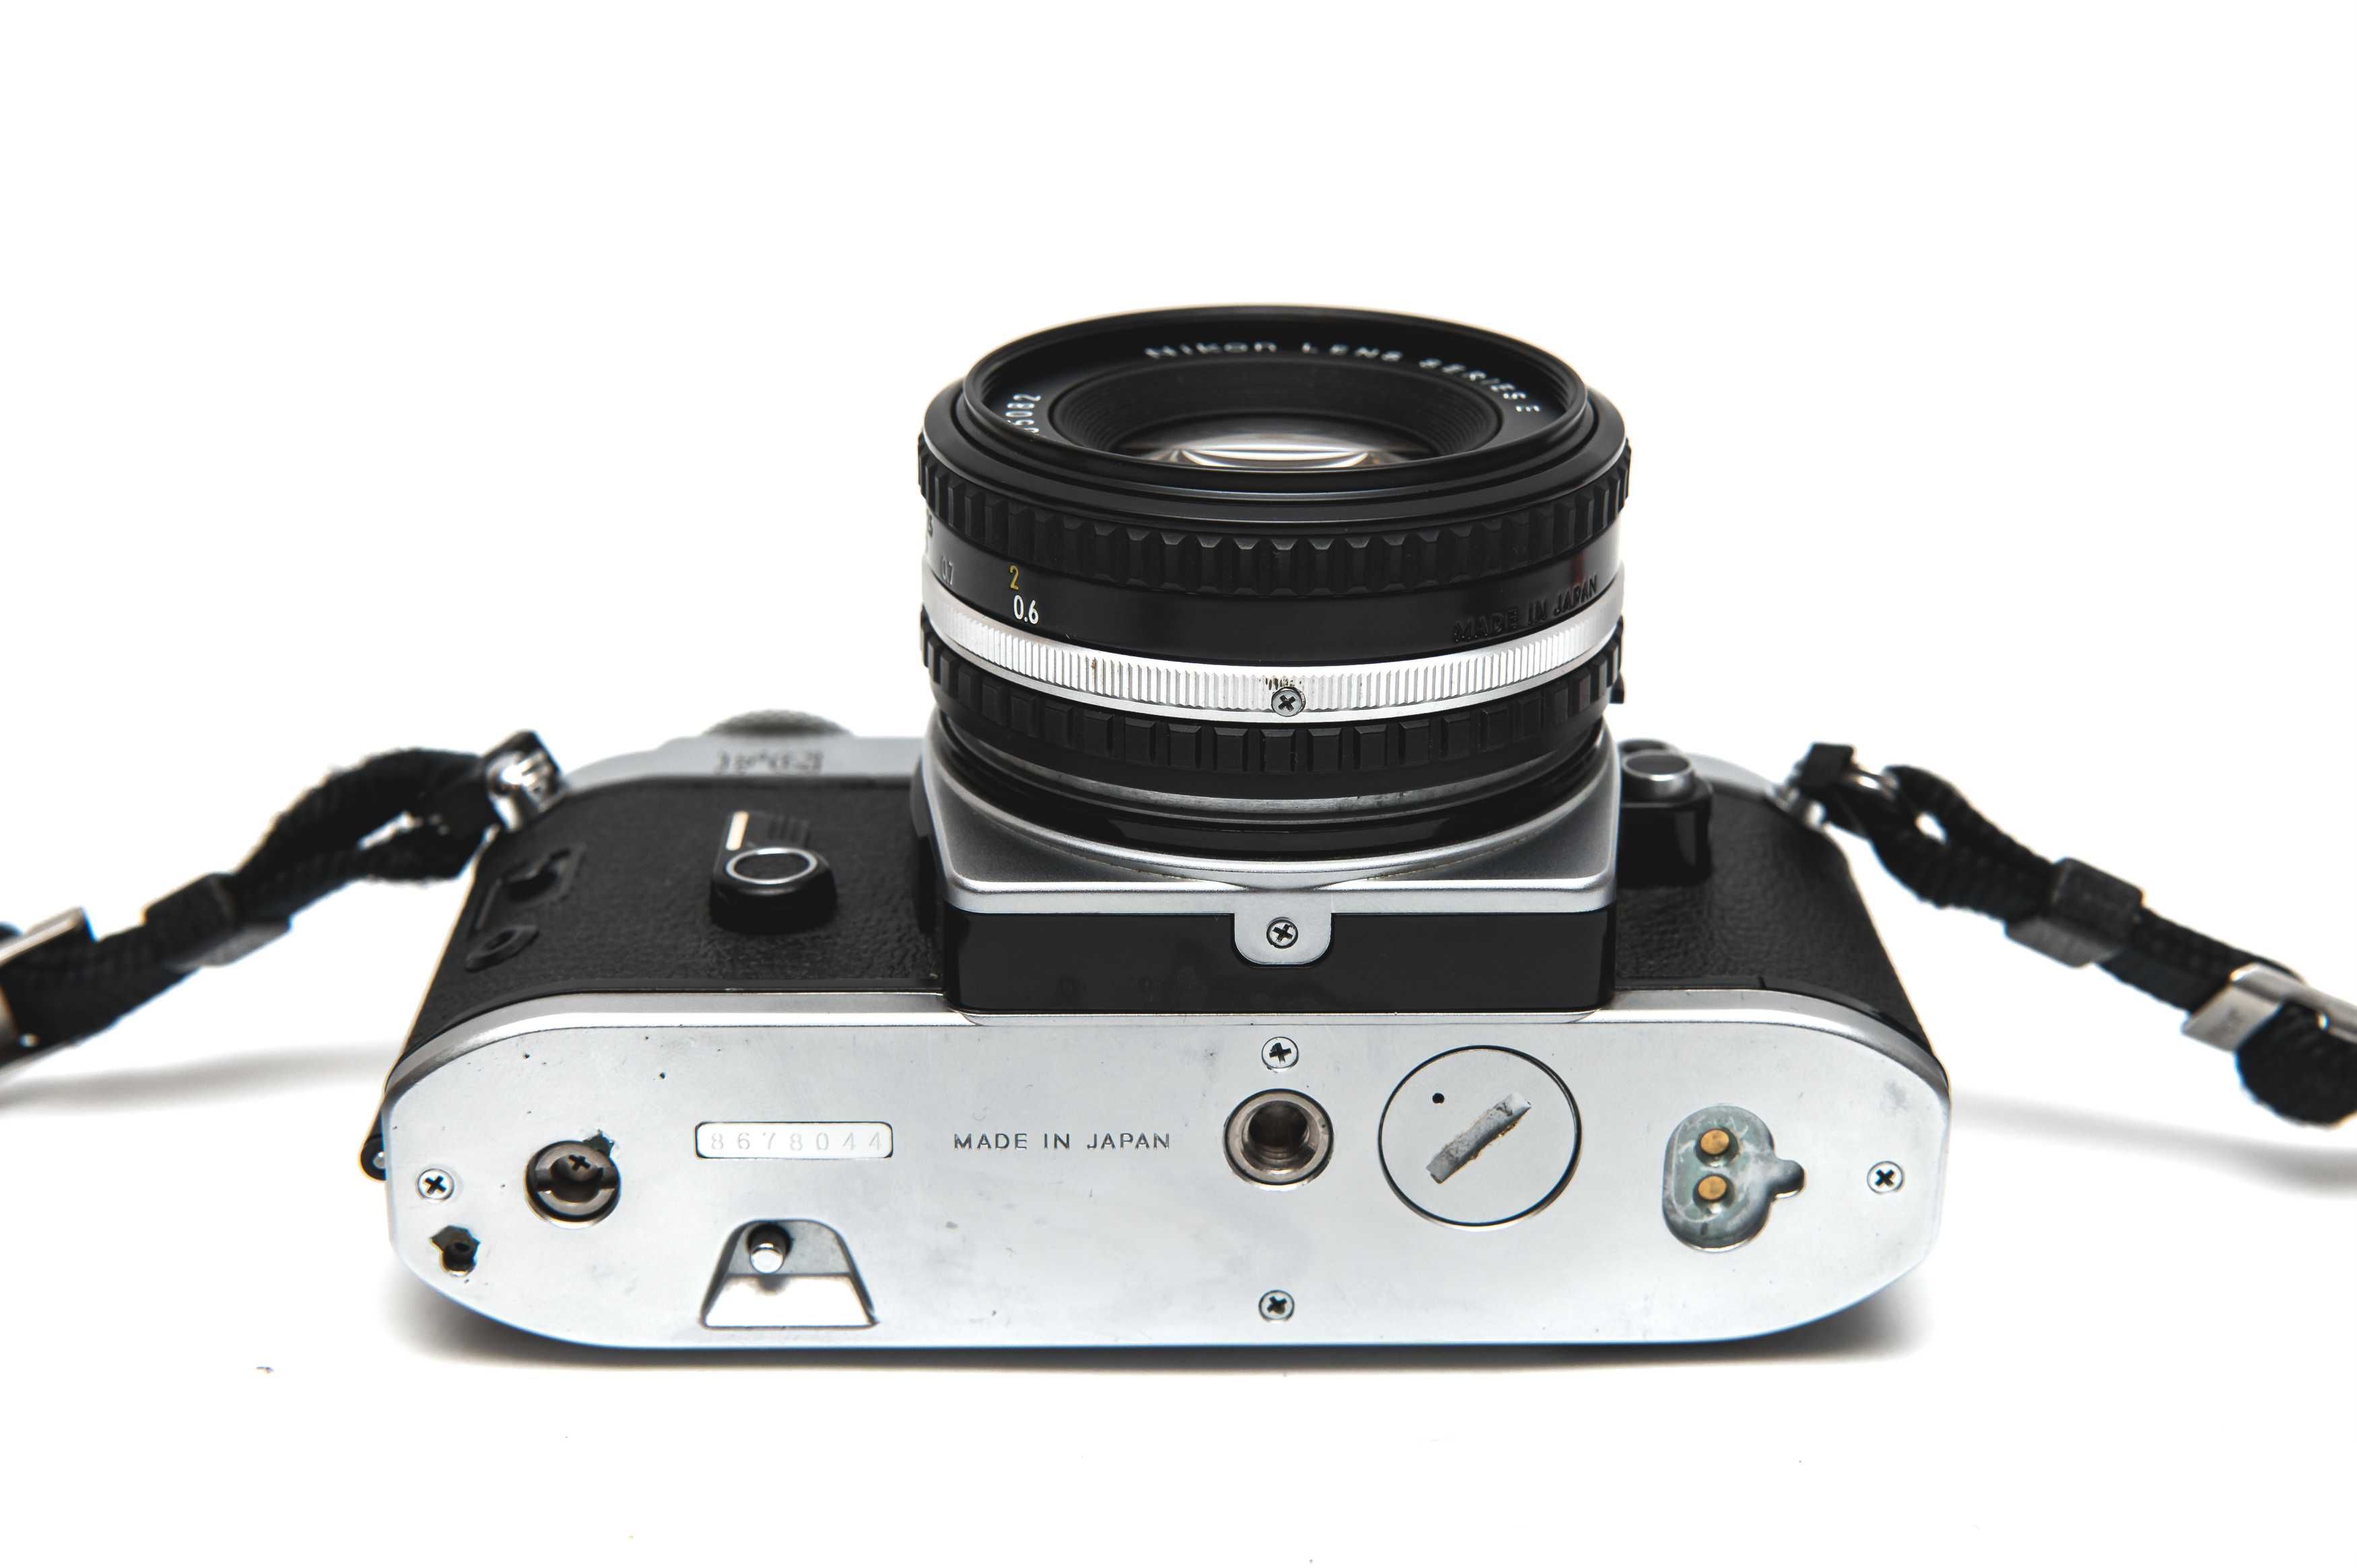 Nikon FG + obiektyw 50mm 1:1.8, analog, świetny stan, SAMPLE